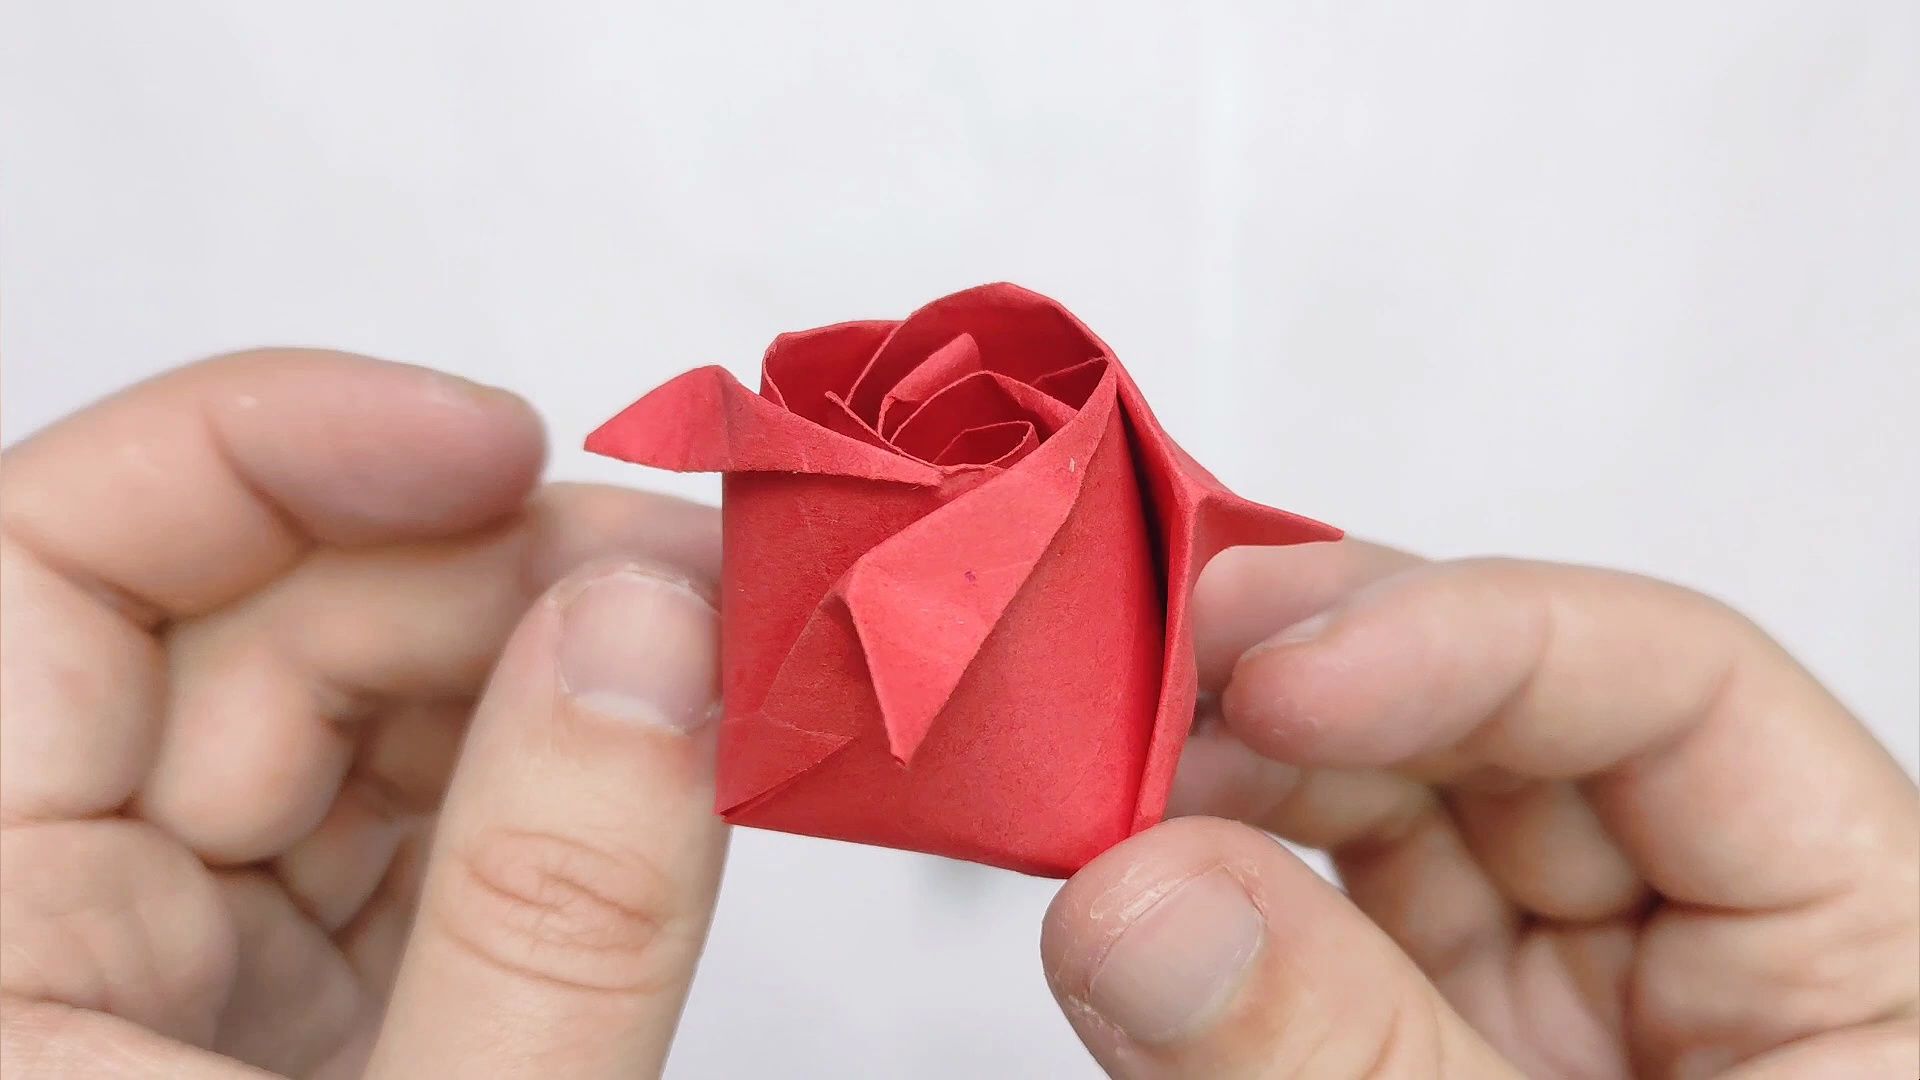 折纸图解玫瑰花图片